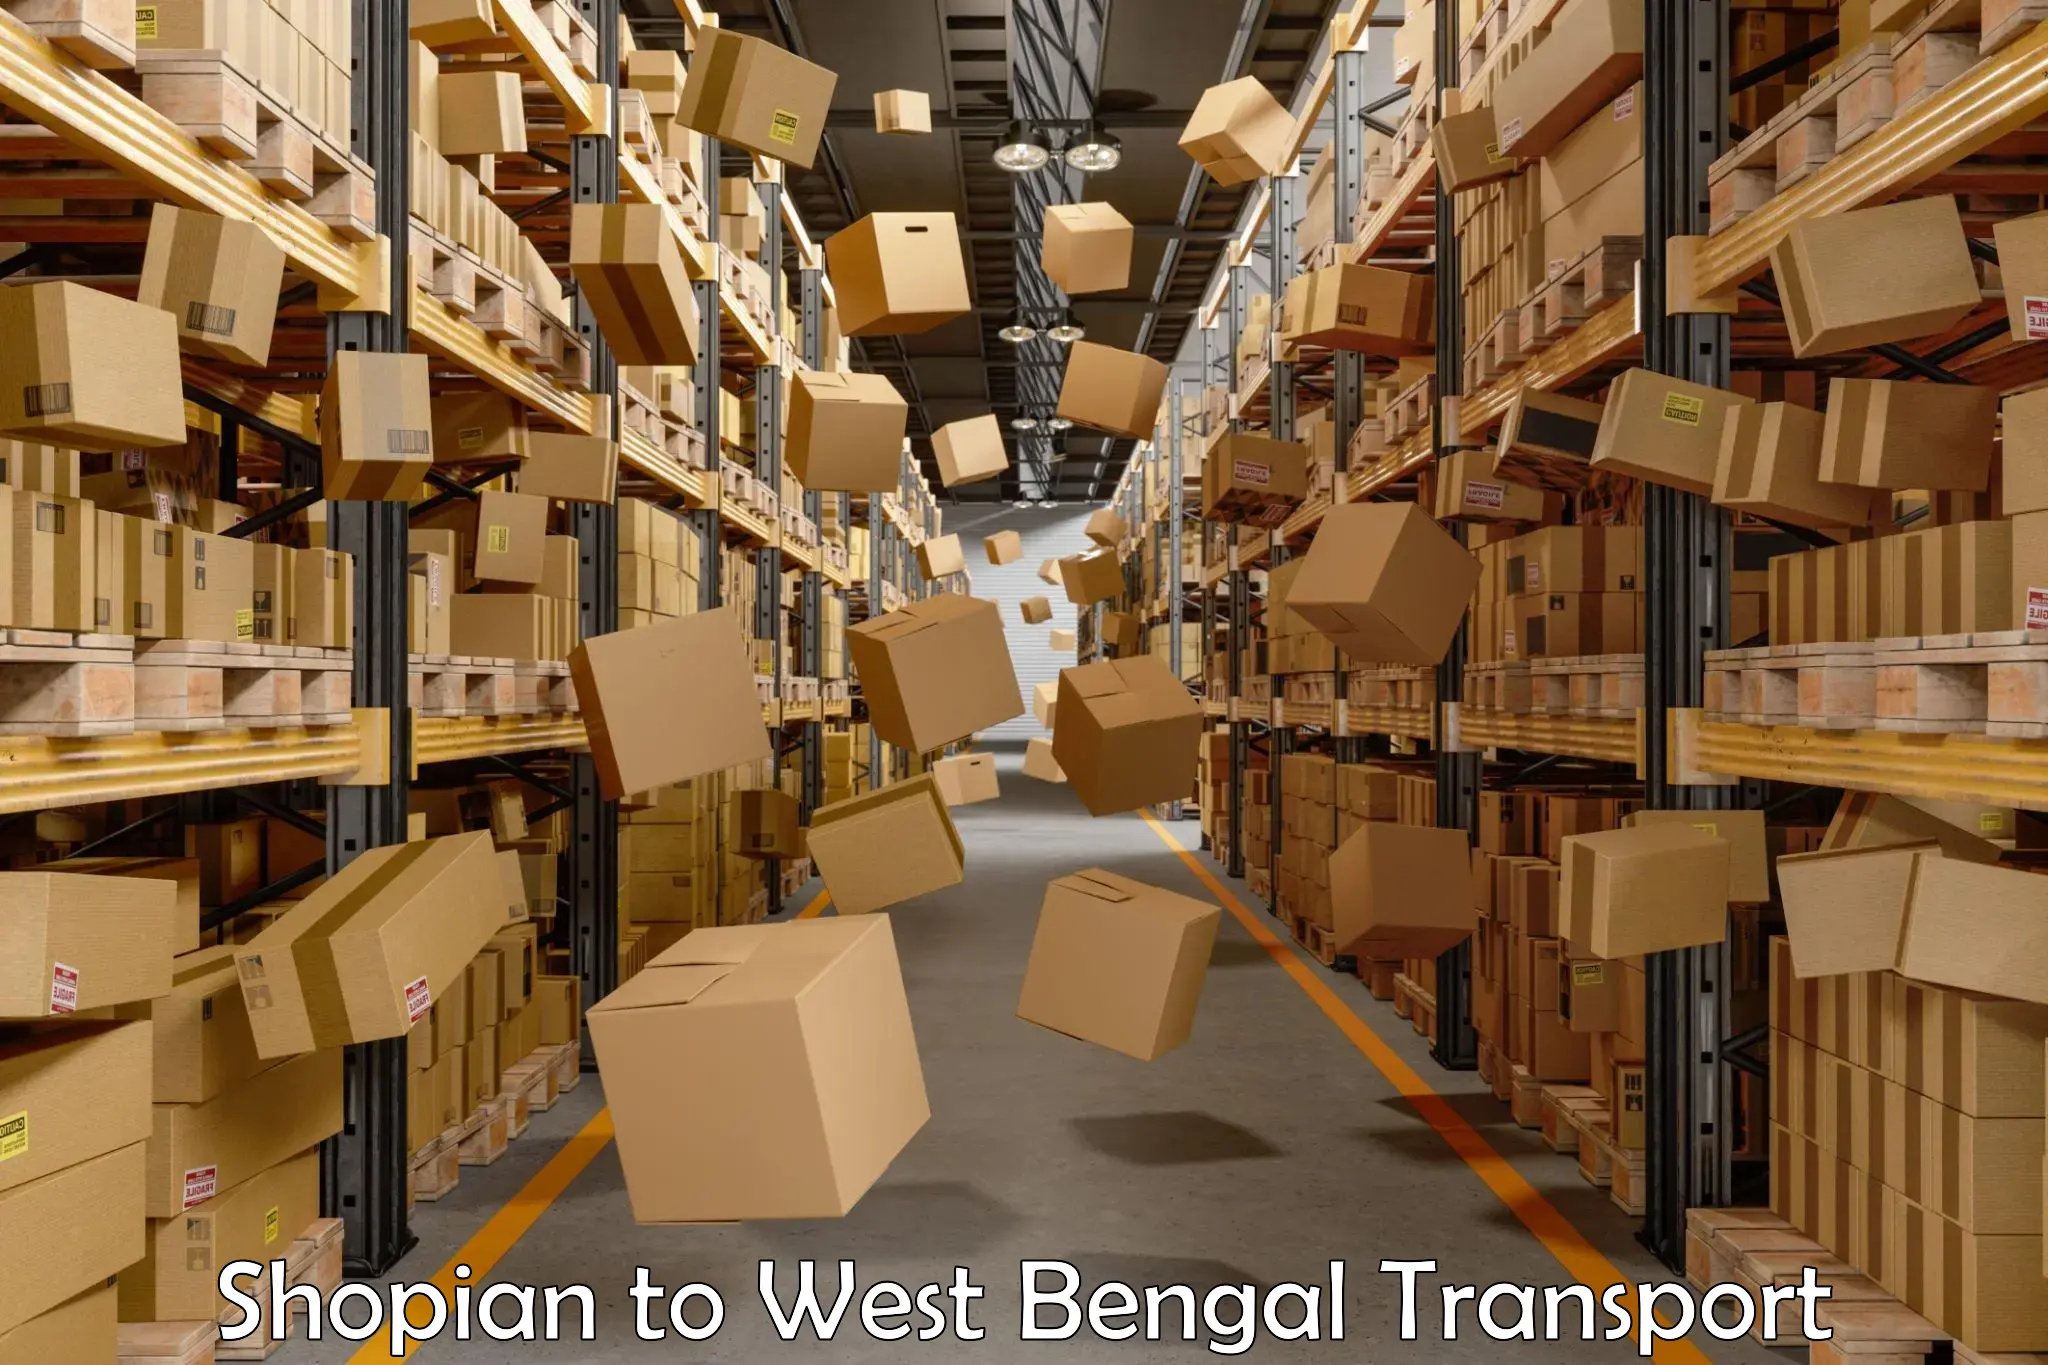 Parcel transport services Shopian to West Bengal